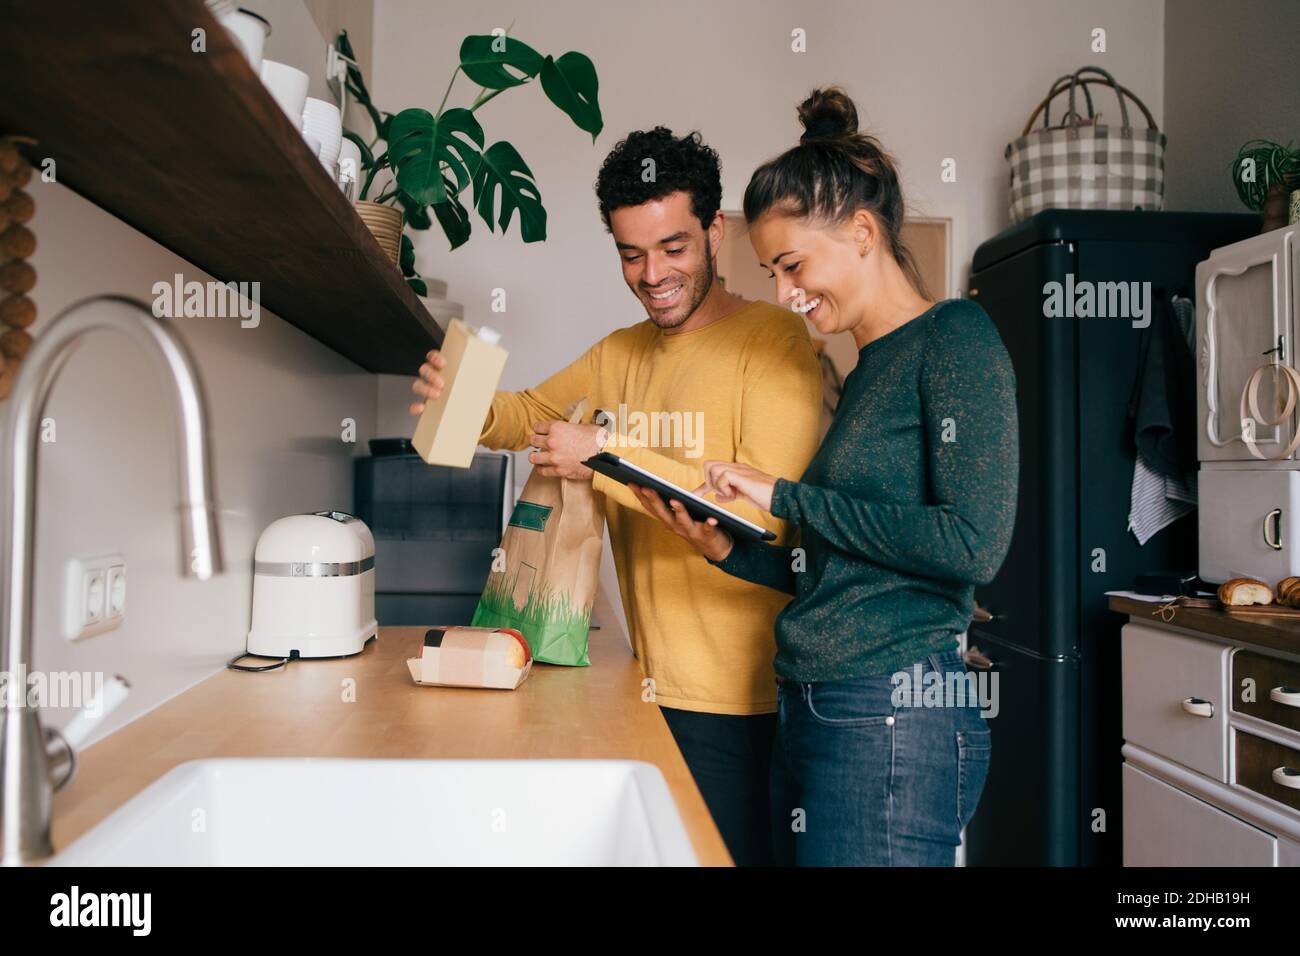 Lächelnder Mann, der Lebensmittel aus der Tasche herausgenommen hat, während Freundin digital zeigt Tablet an der Küchentheke Stockfoto